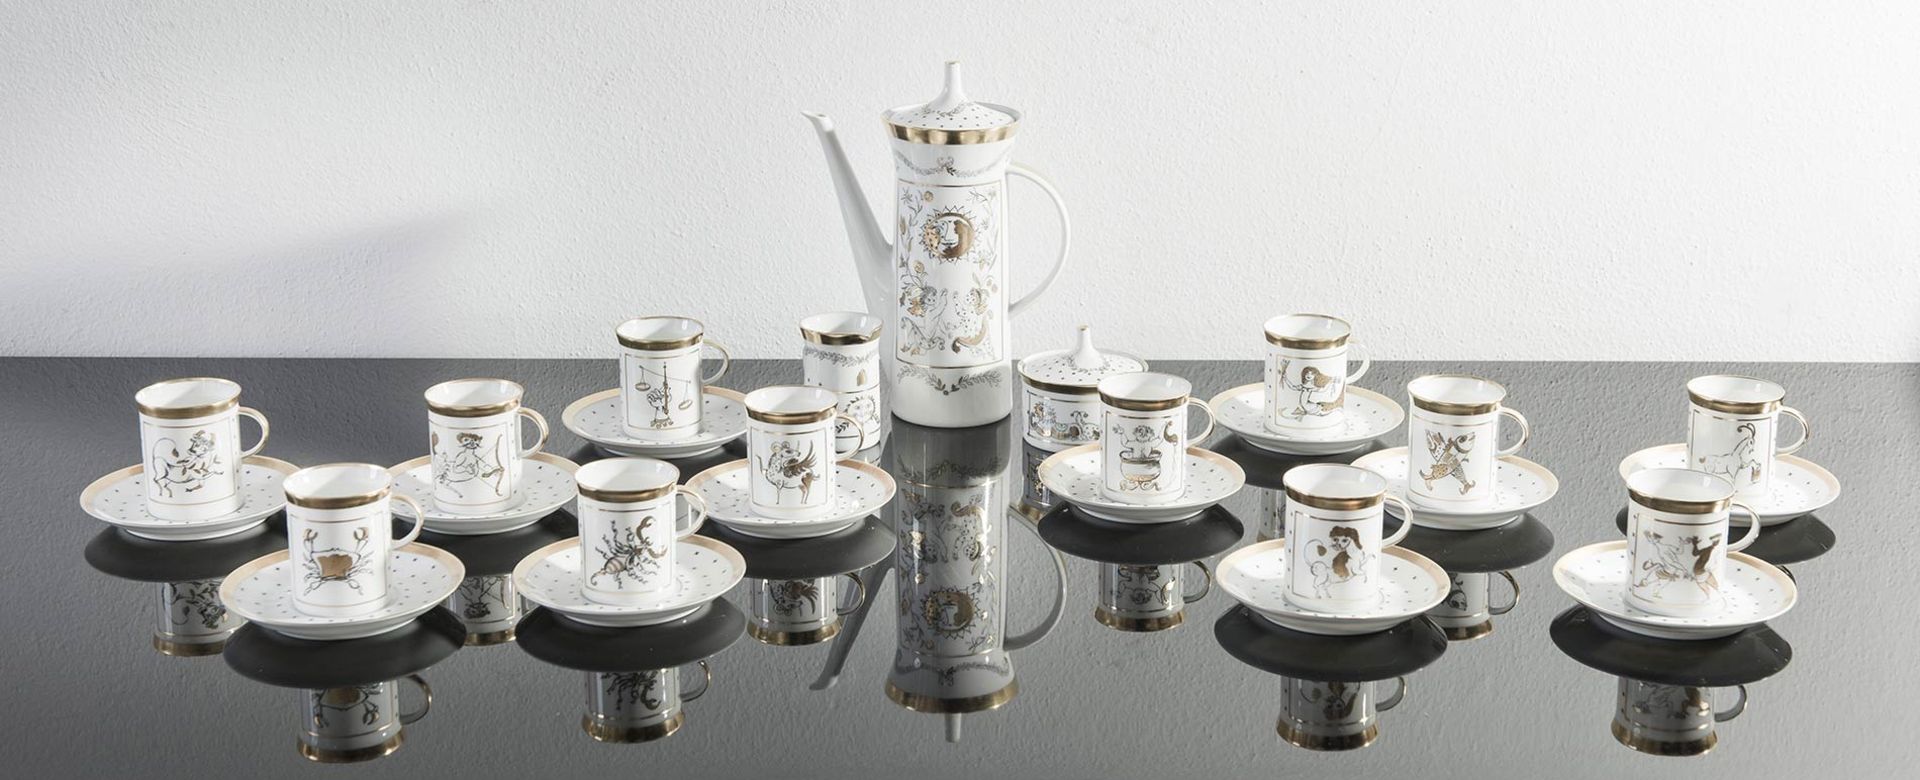 Rosenthal Studio Linie, Servizio da caffè da dodici persone in porcellana, Germania, XX secolo. - Image 3 of 9